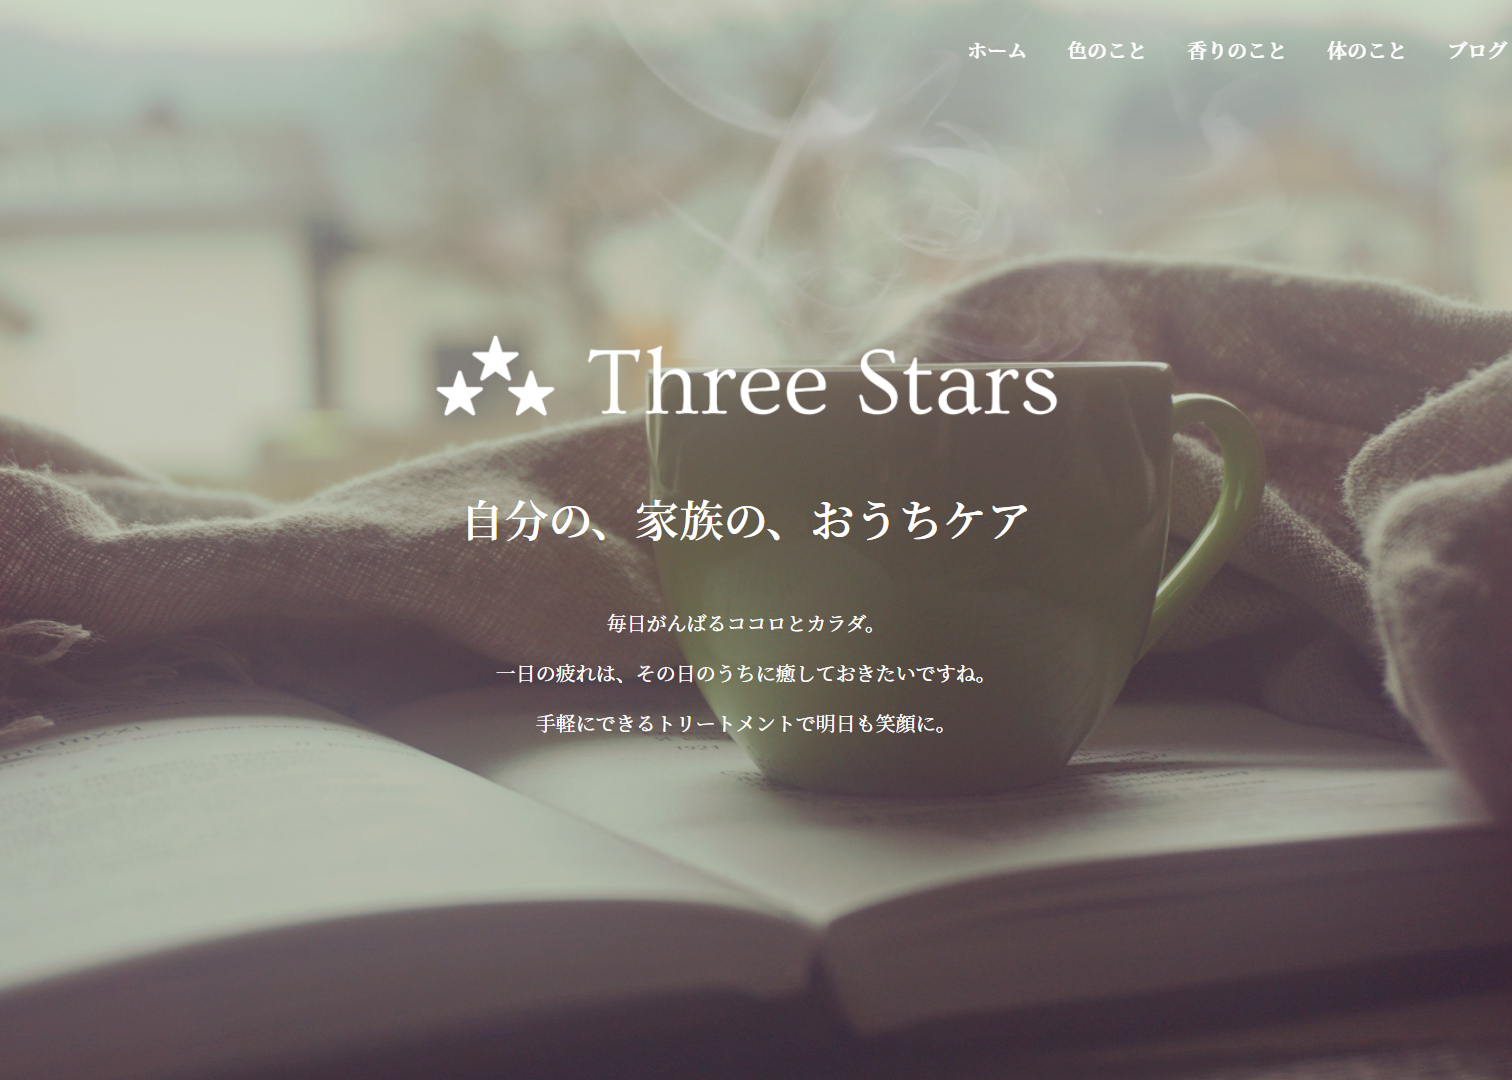 Three Stars サイトトップイメージ